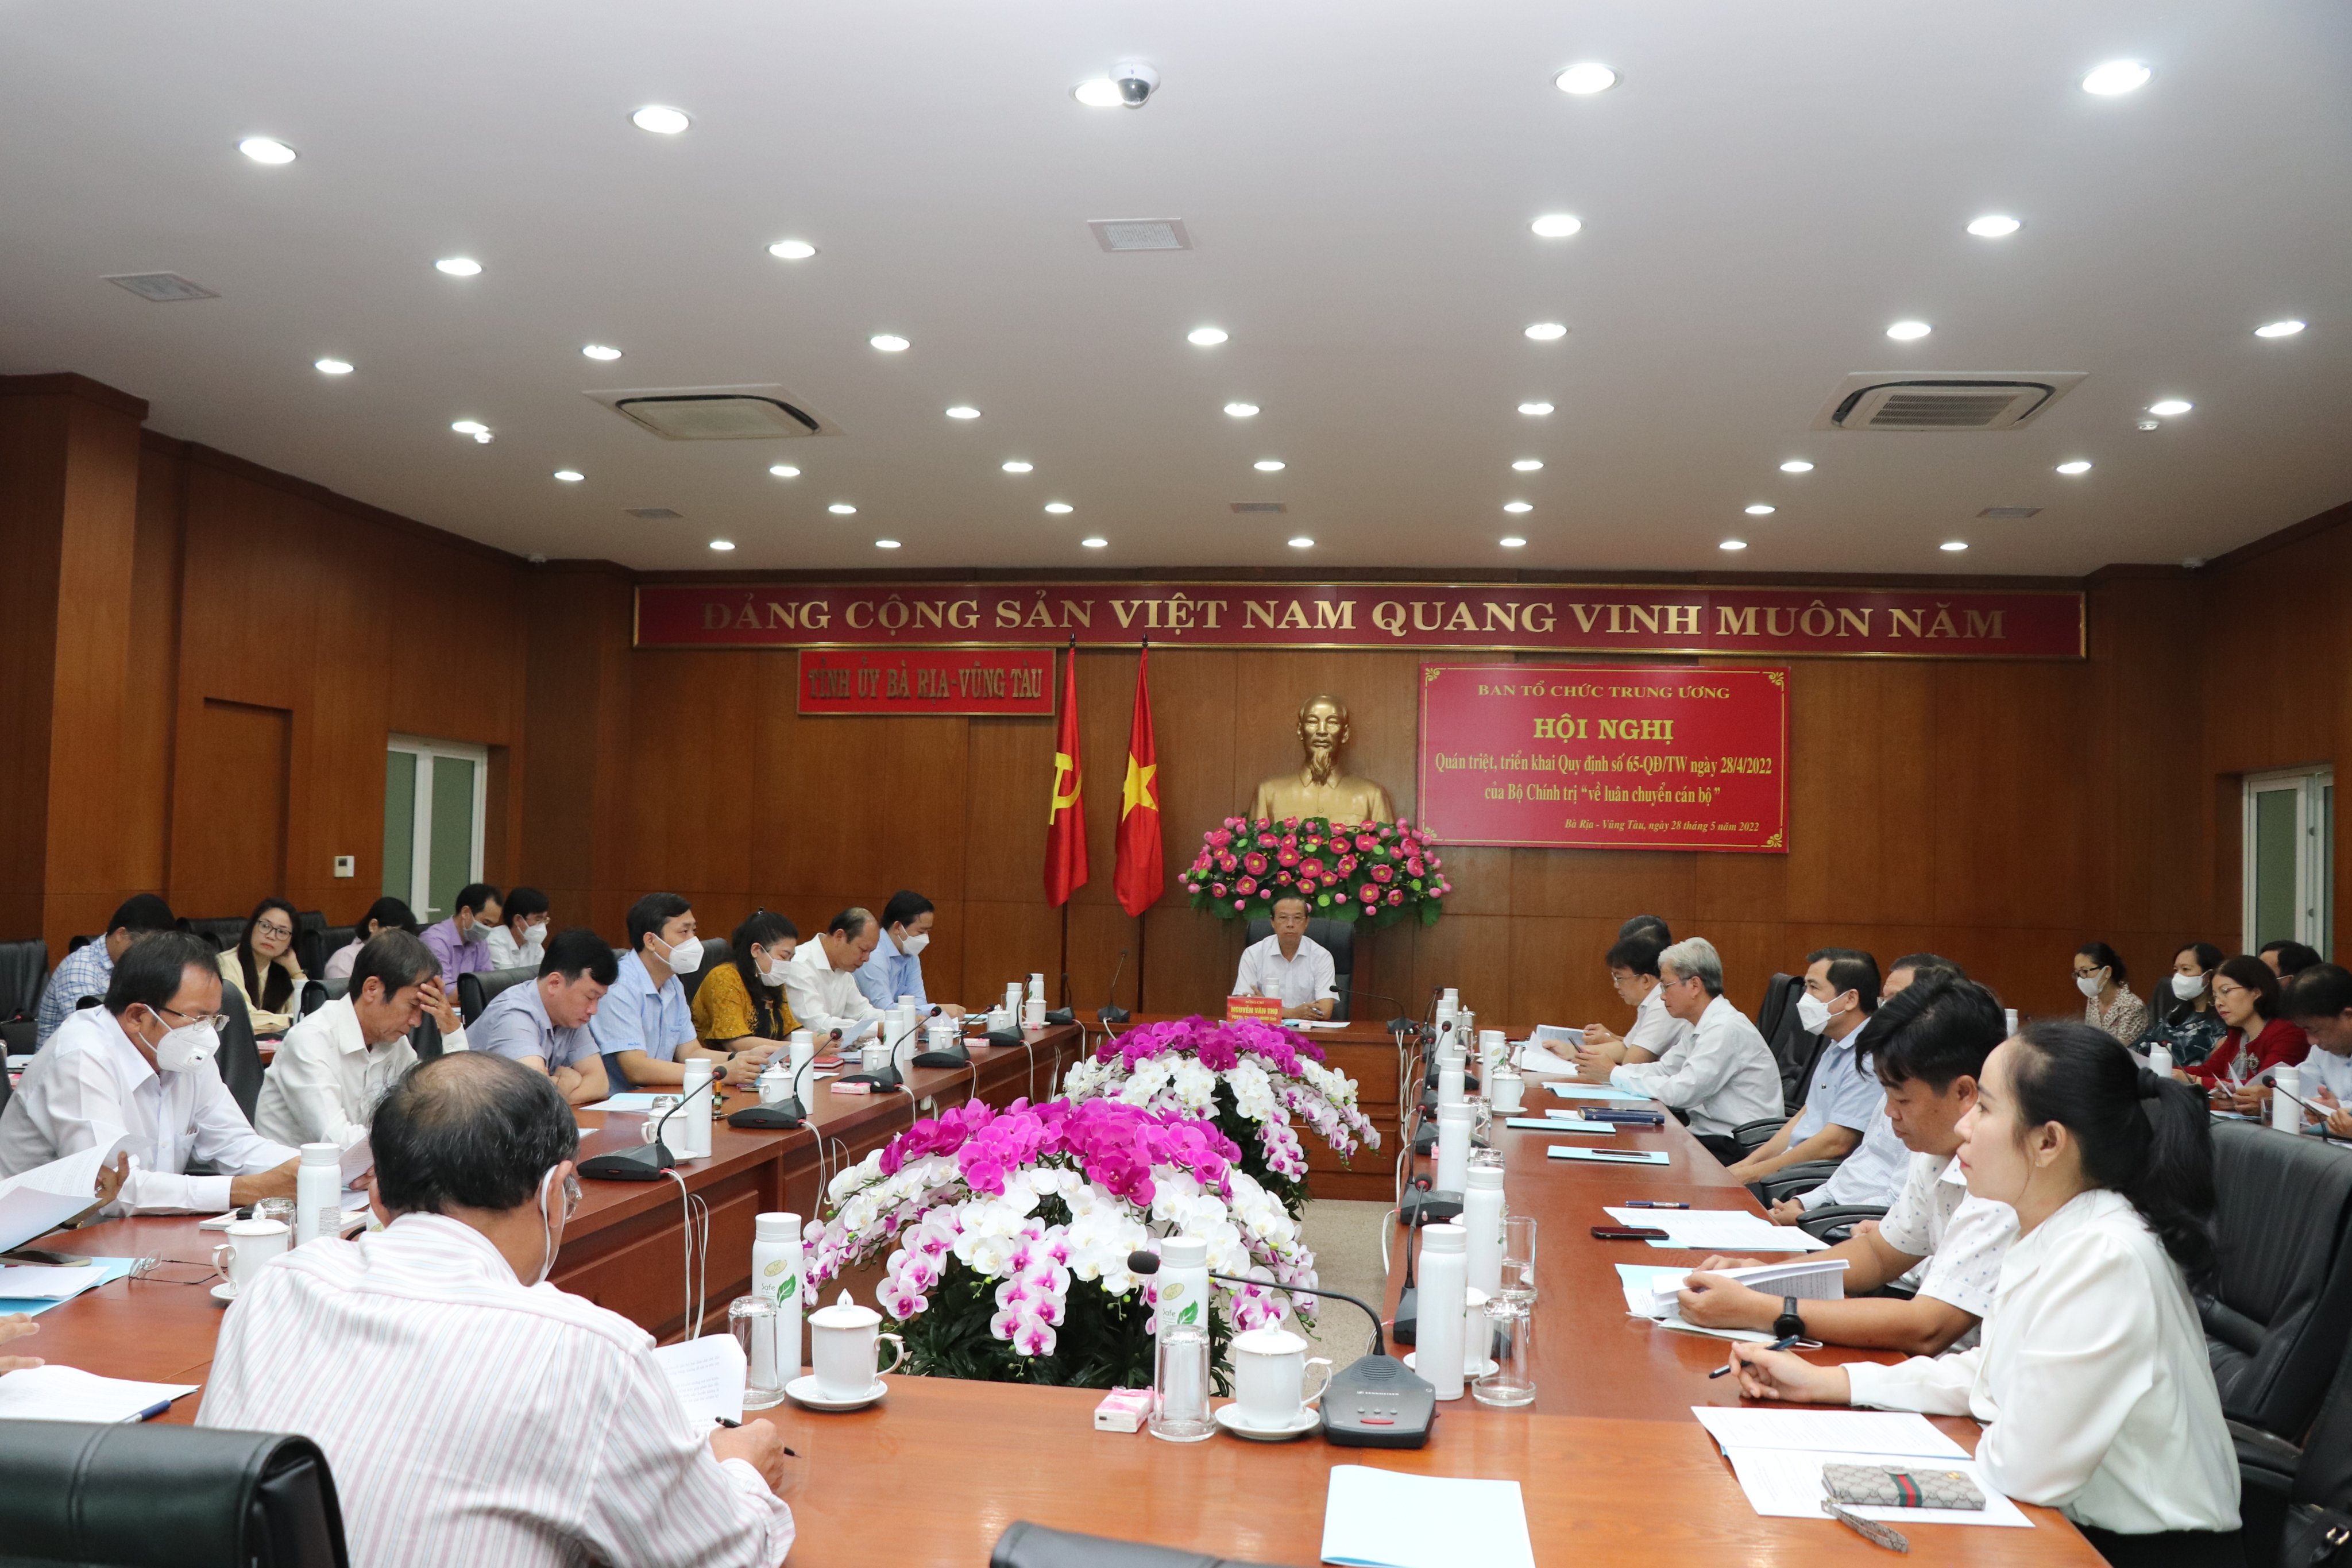 Quang cảnh hội nghị tại điểm cầu Tỉnh ủy Bà Rịa-Vũng Tàu.